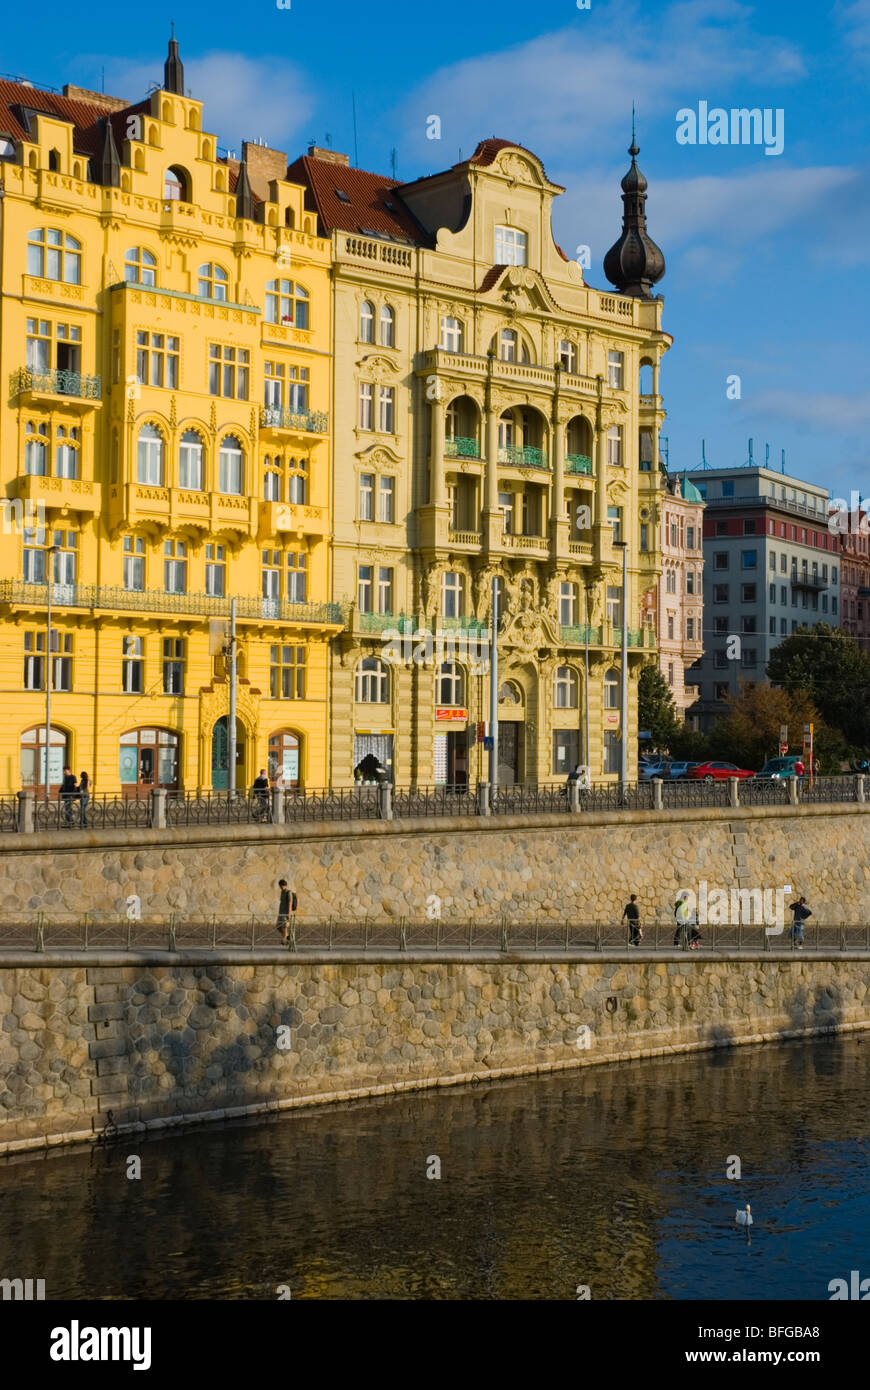 Maisons au bord de la Jiraskovo namesti square de Nove mesto de Prague République Tchèque Europe Banque D'Images